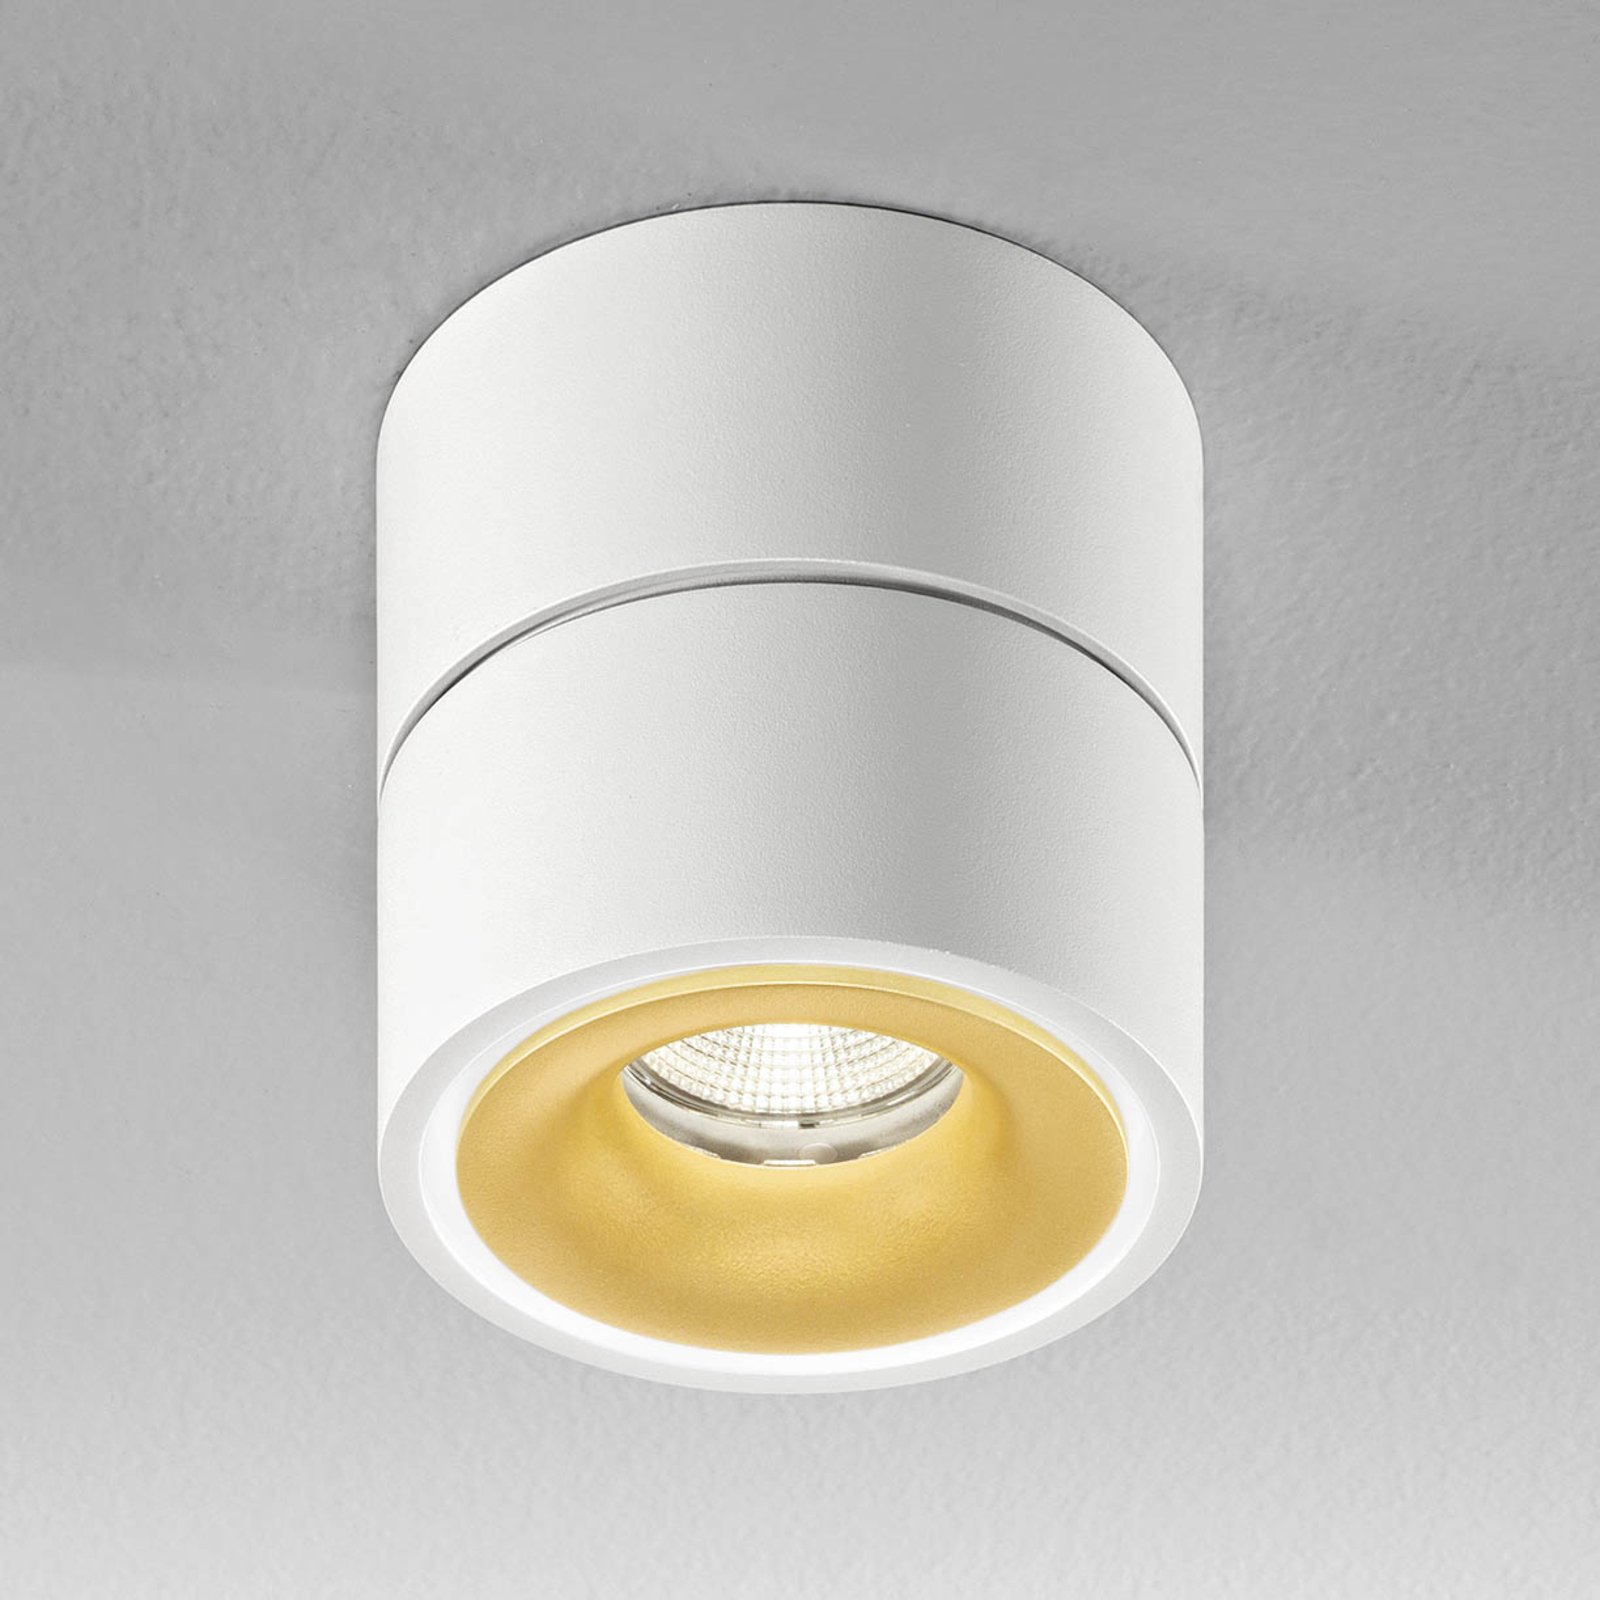 Egger Clippo S spot sufitowy LED, biało-złoty